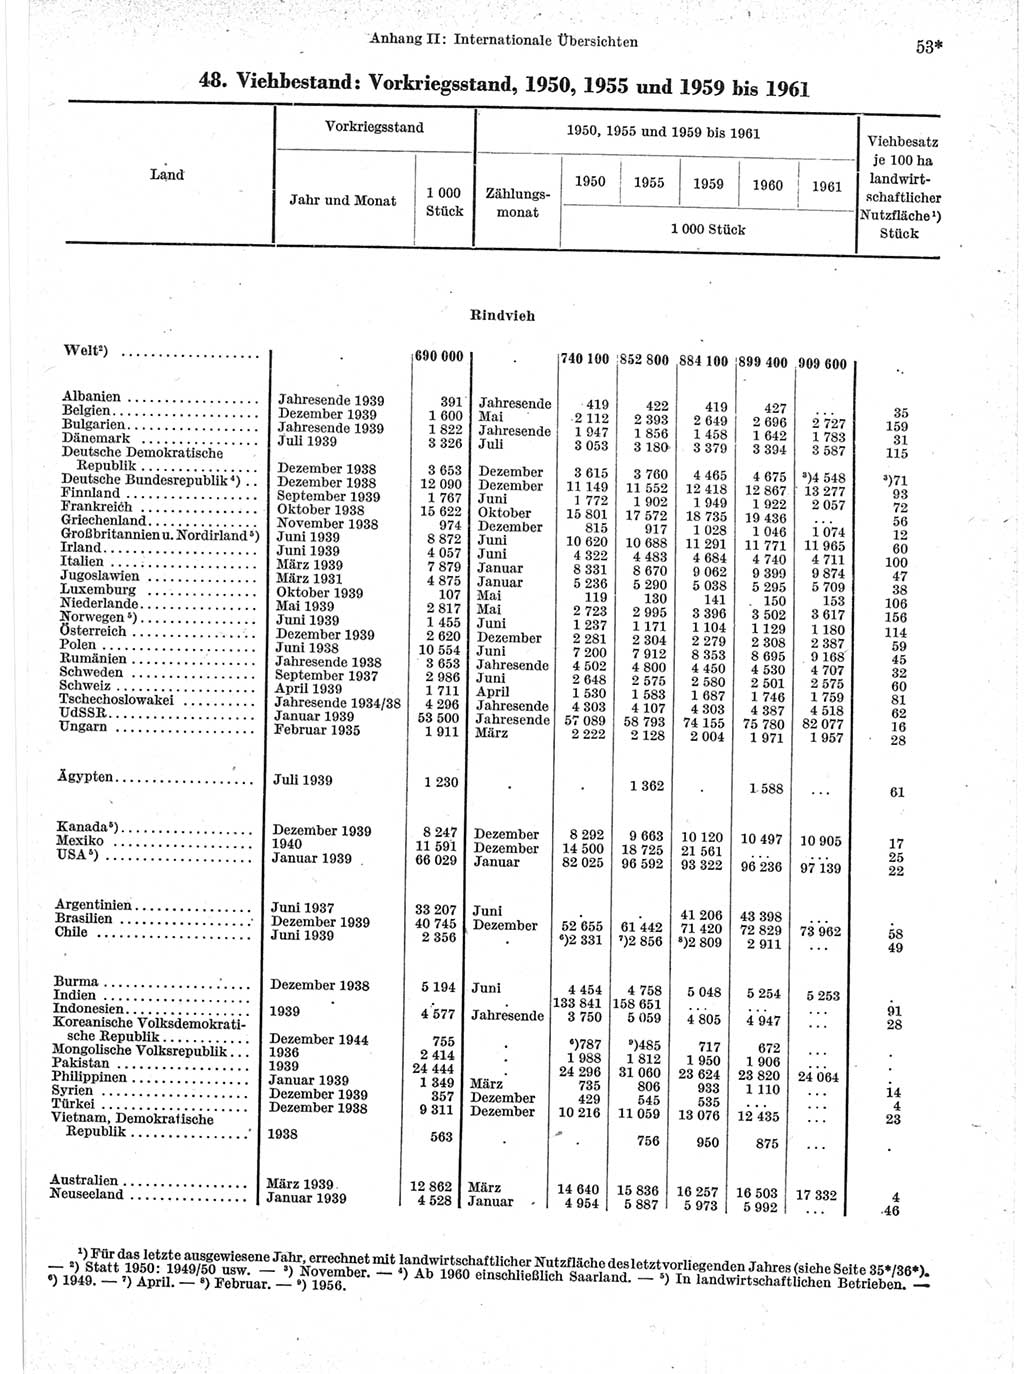 Statistisches Jahrbuch der Deutschen Demokratischen Republik (DDR) 1963, Seite 53 (Stat. Jb. DDR 1963, S. 53)